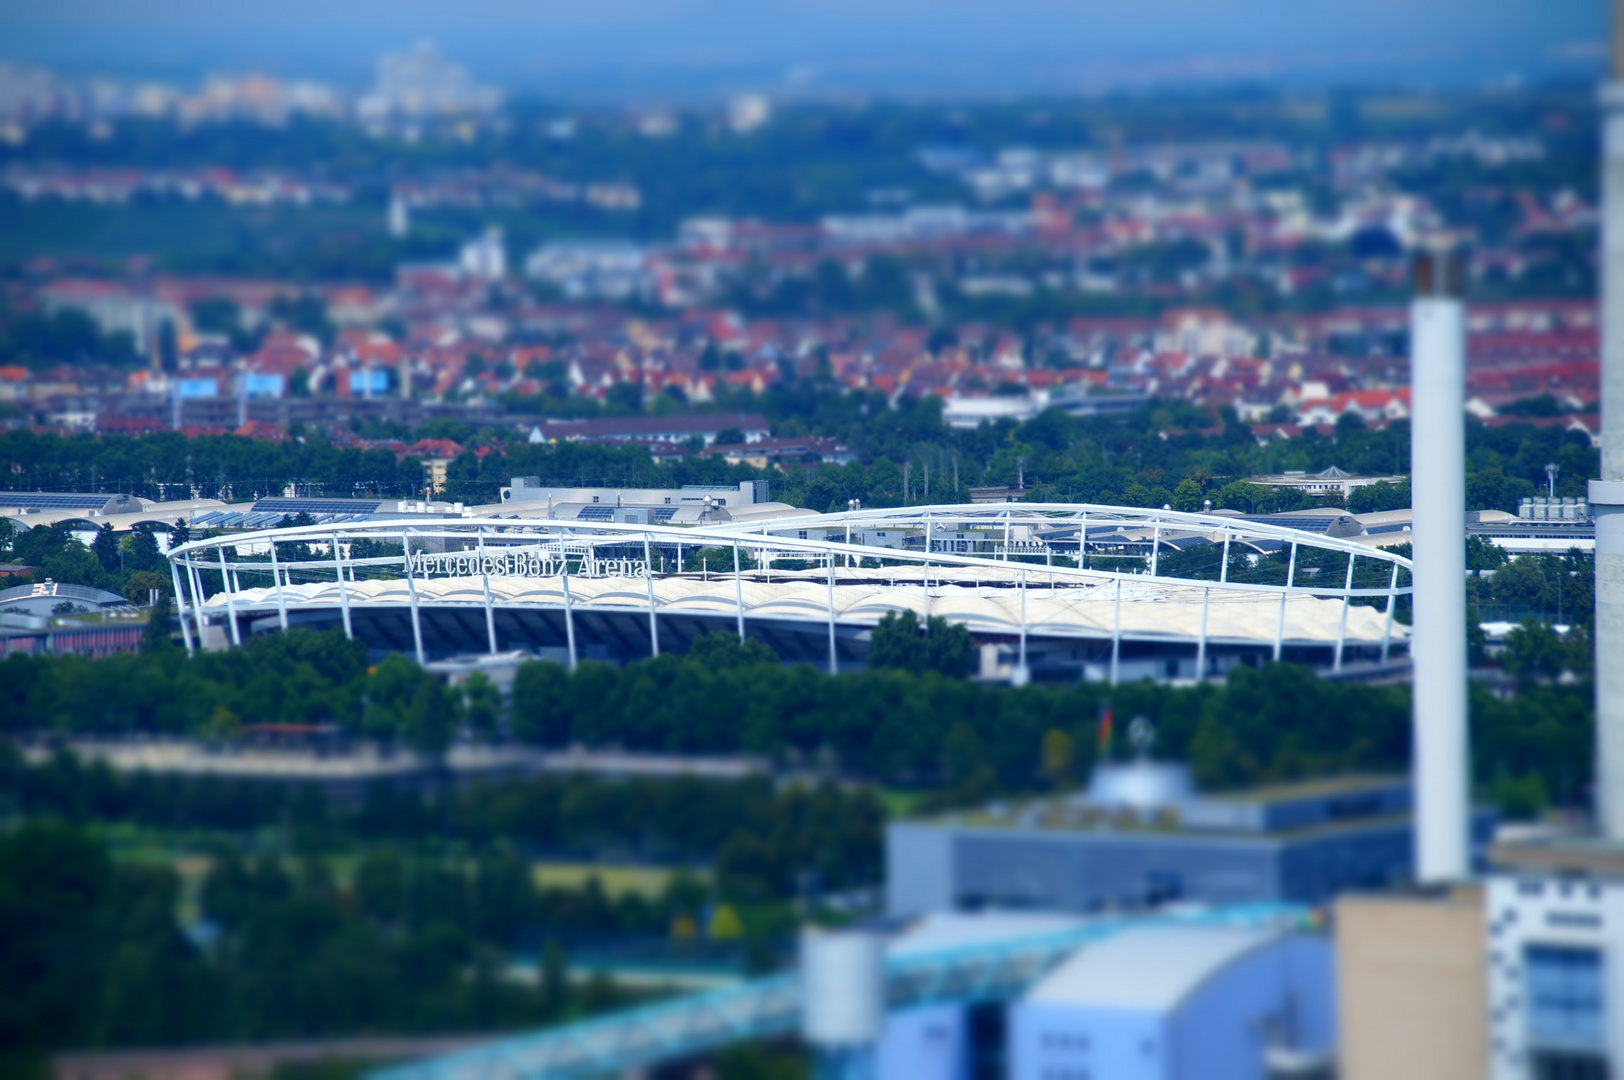 Stuttgart Stadion